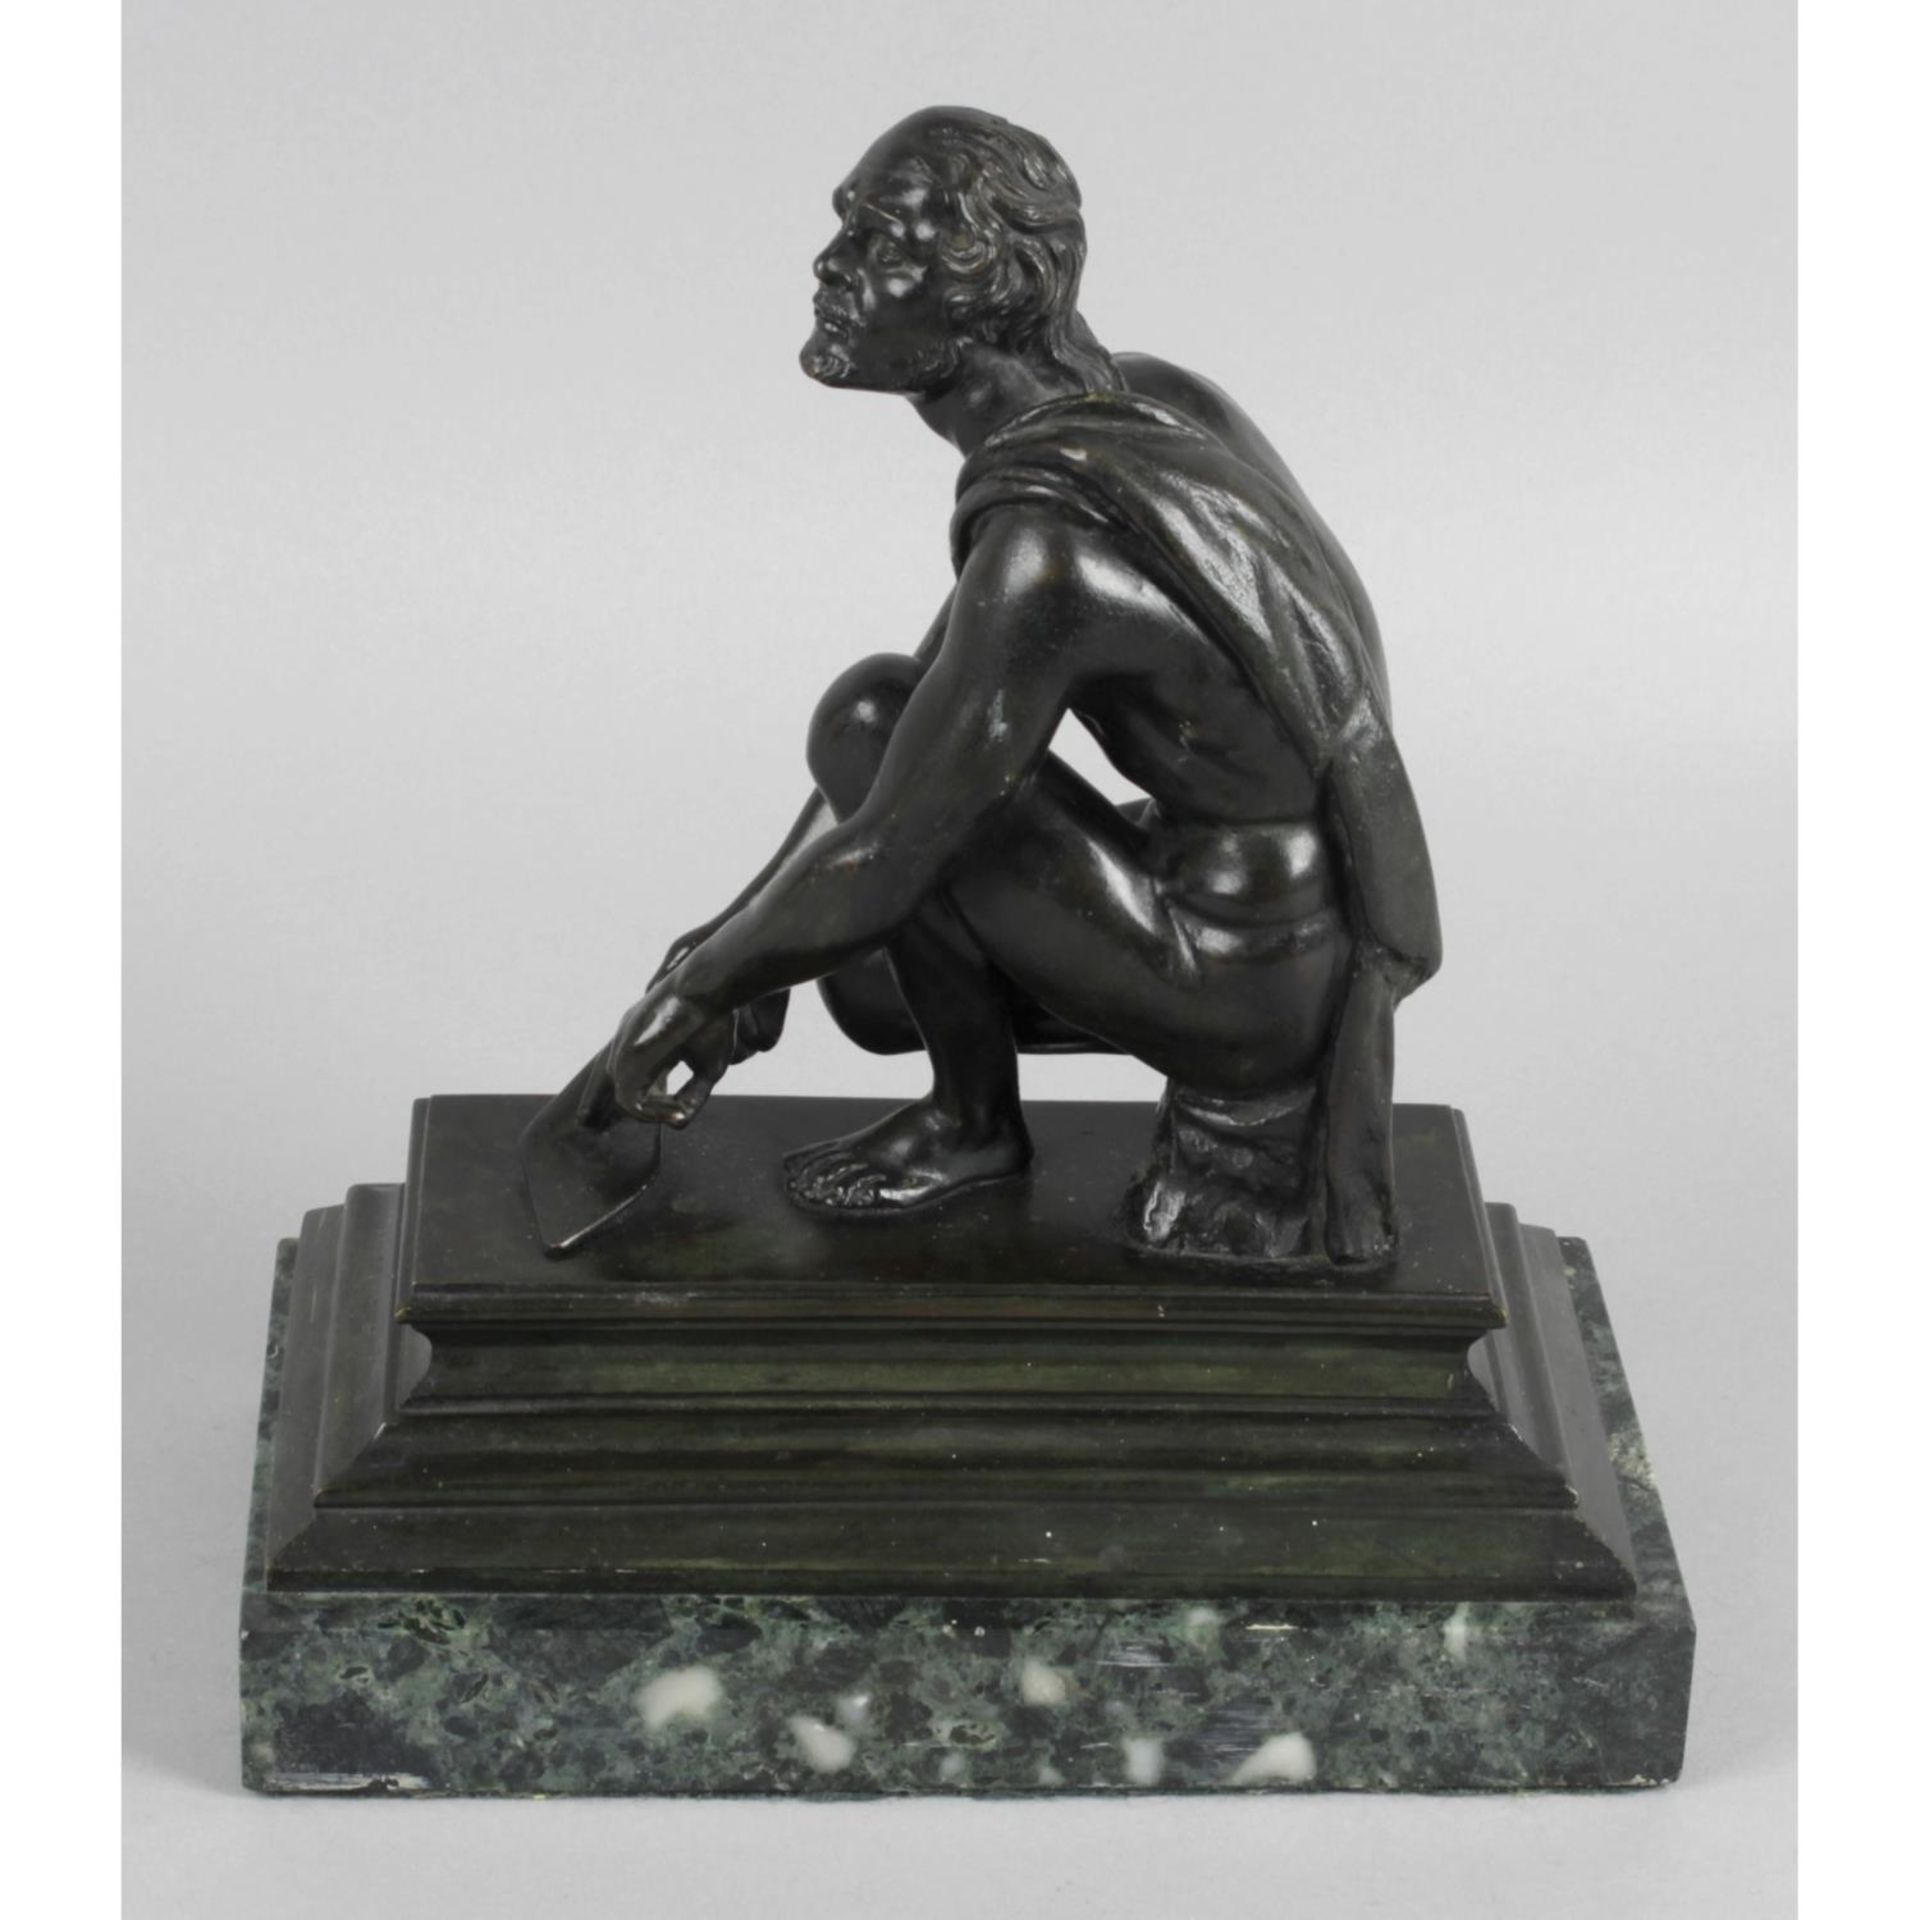 After Giovanni Battista Foggini, a bronze figure modelled as Arrotino.